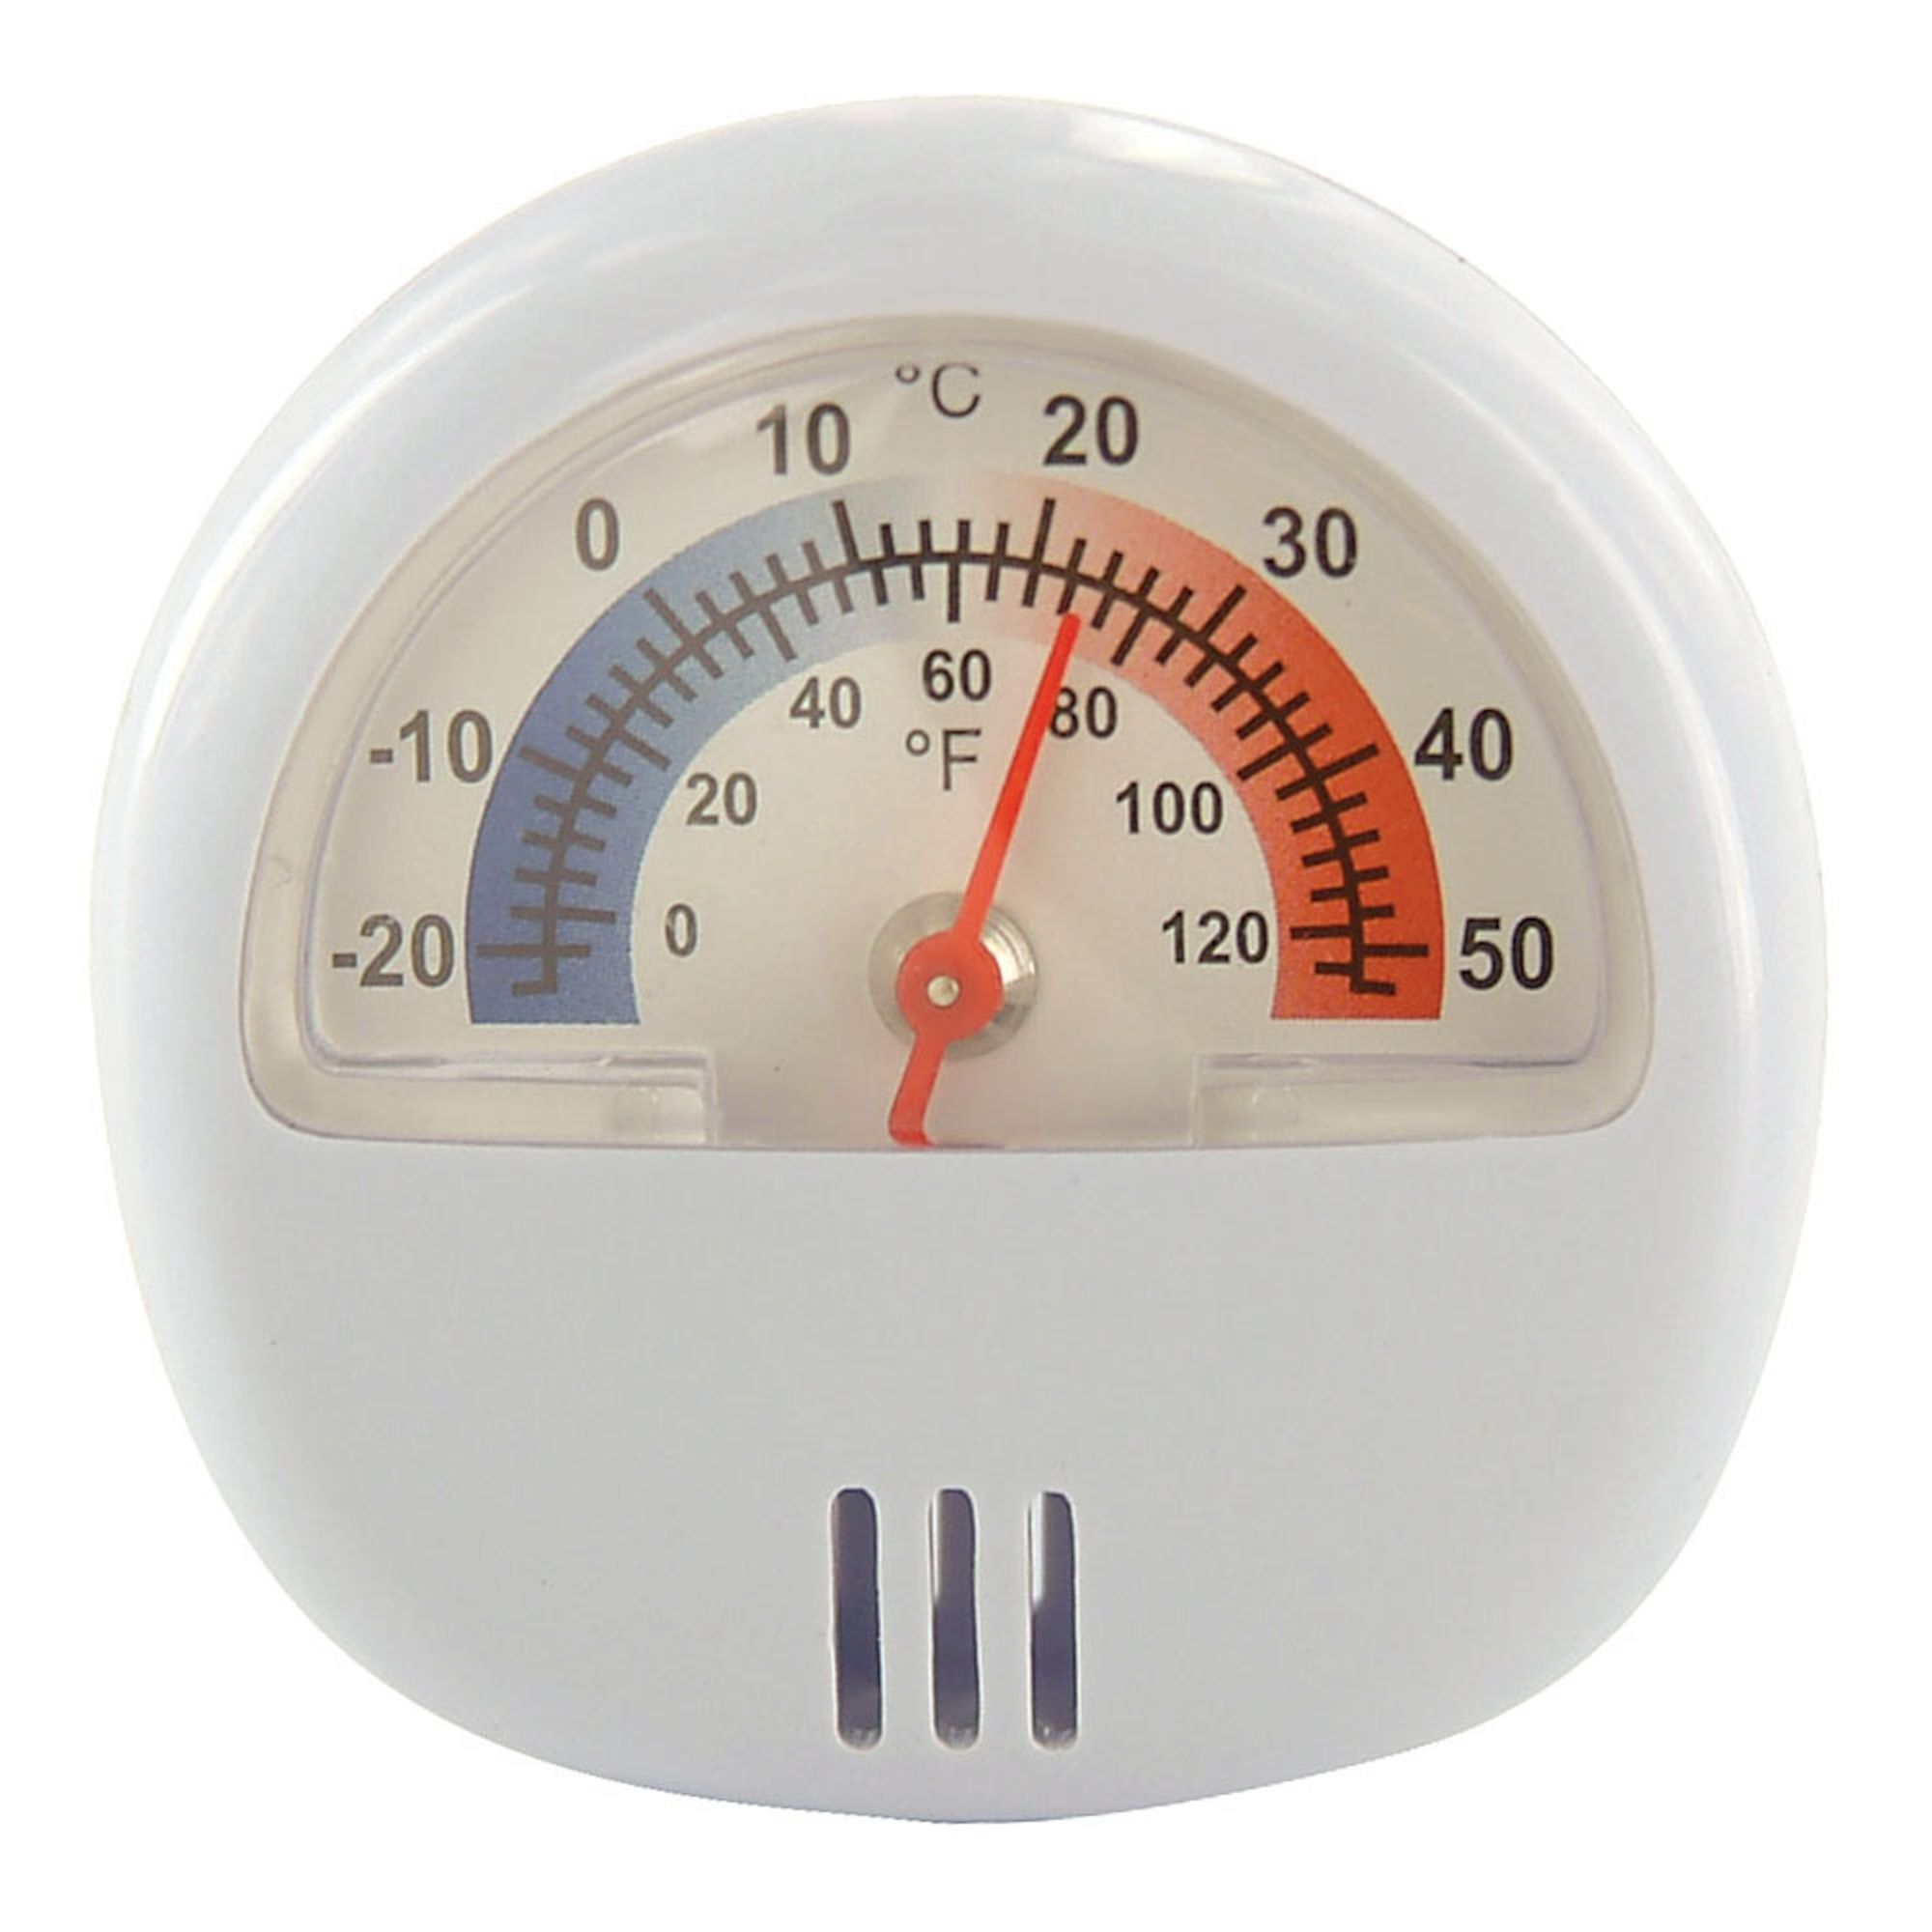 Thermomètre digital pour réfrigérateur et congélateur - Bios